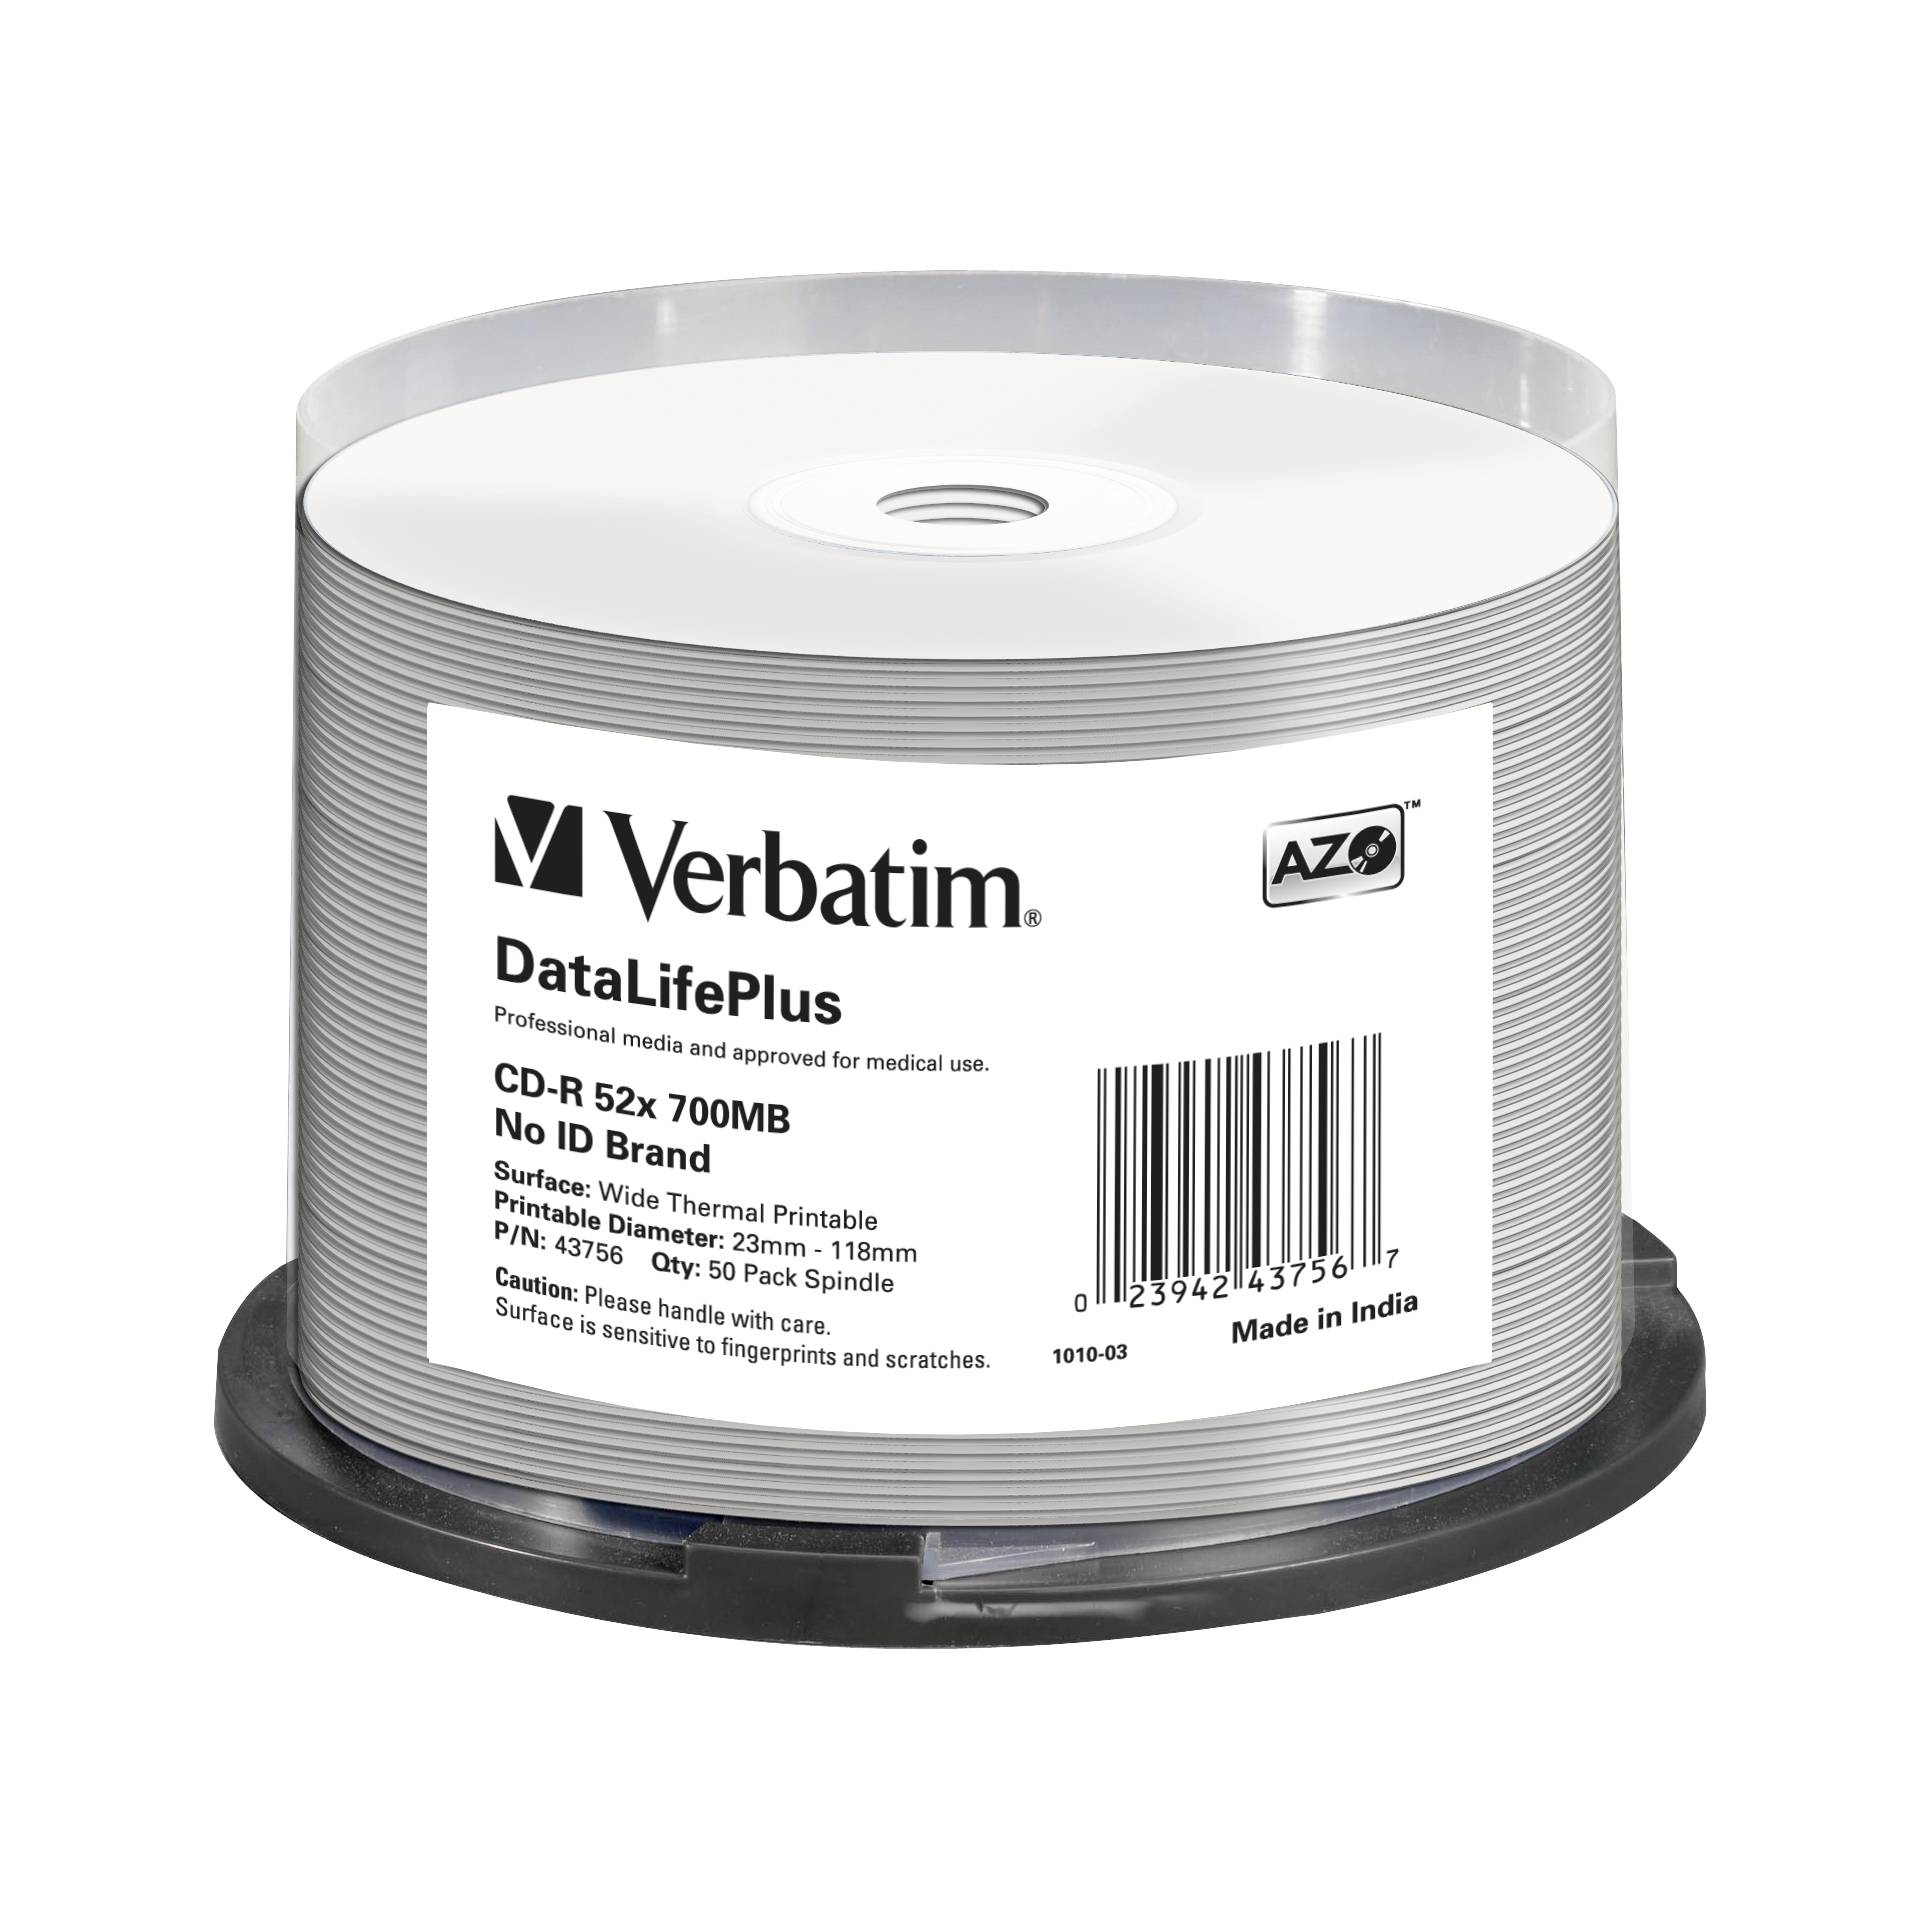 1x50 Verbatim CD-R 80 / 700MB 52x bianc.wide thermal printab